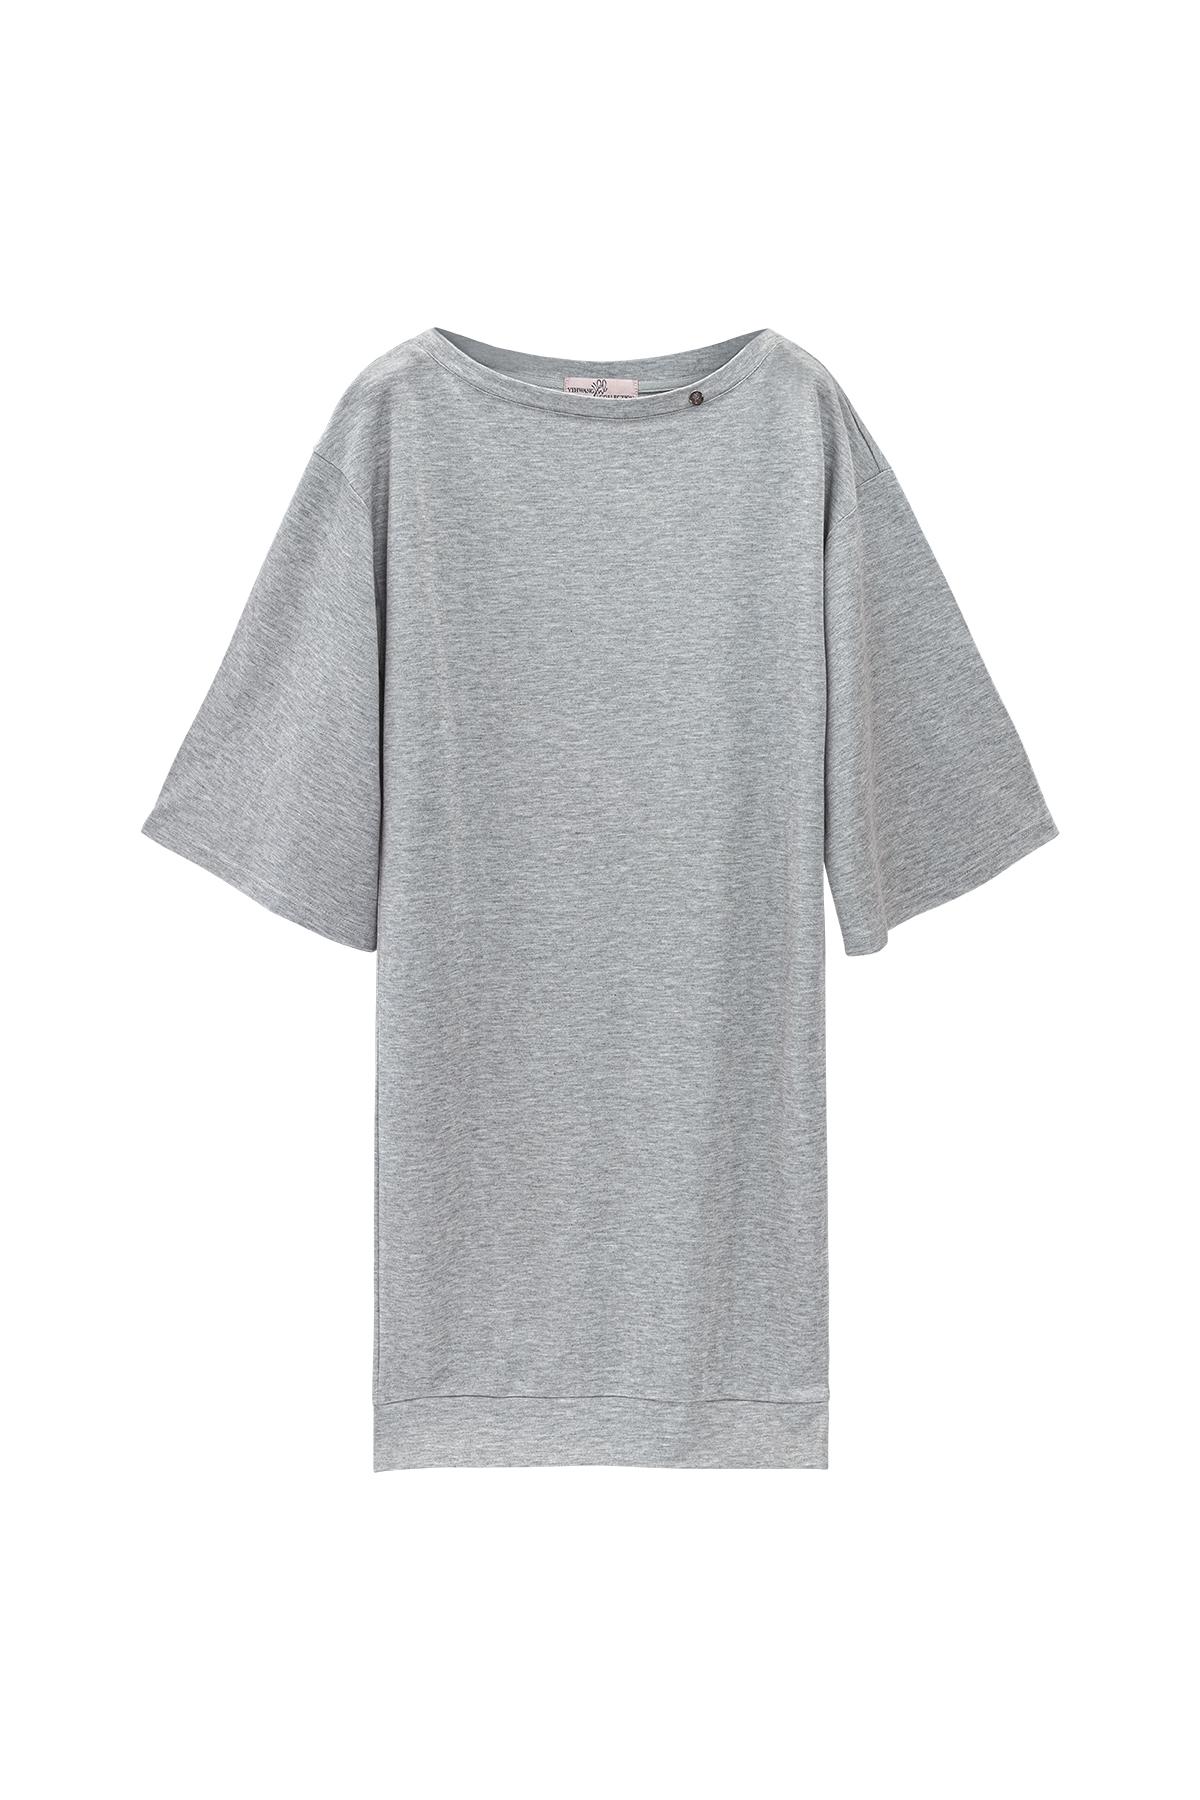 Parlak kaplamalı tişört elbise Grey S h5 